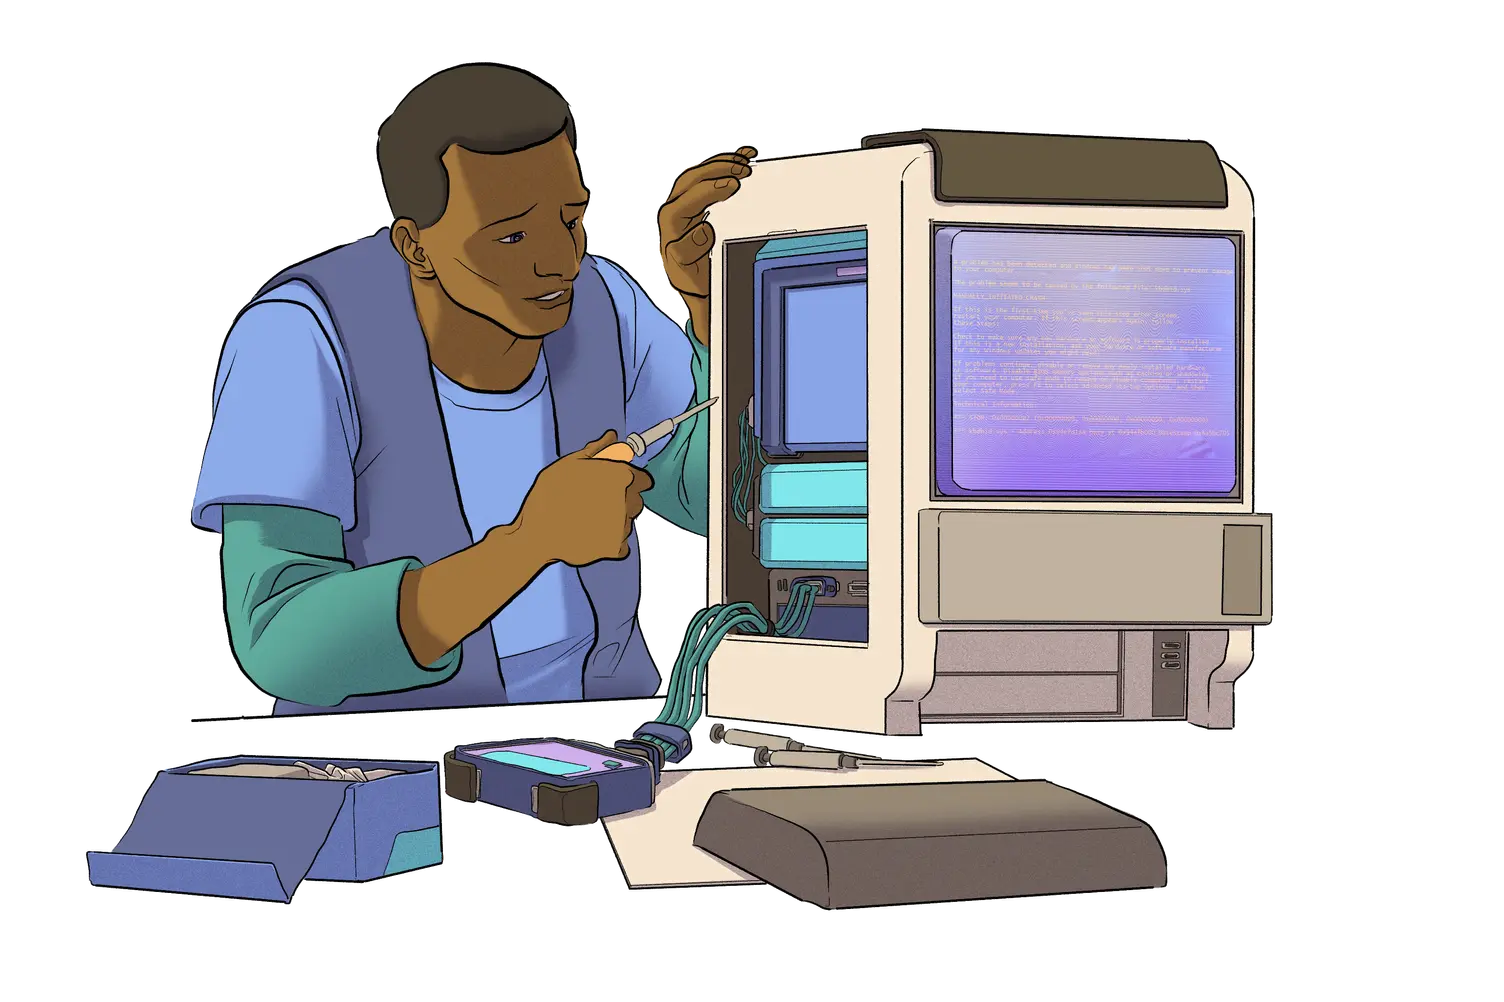 Imagen de una persona trabajando en un computador.